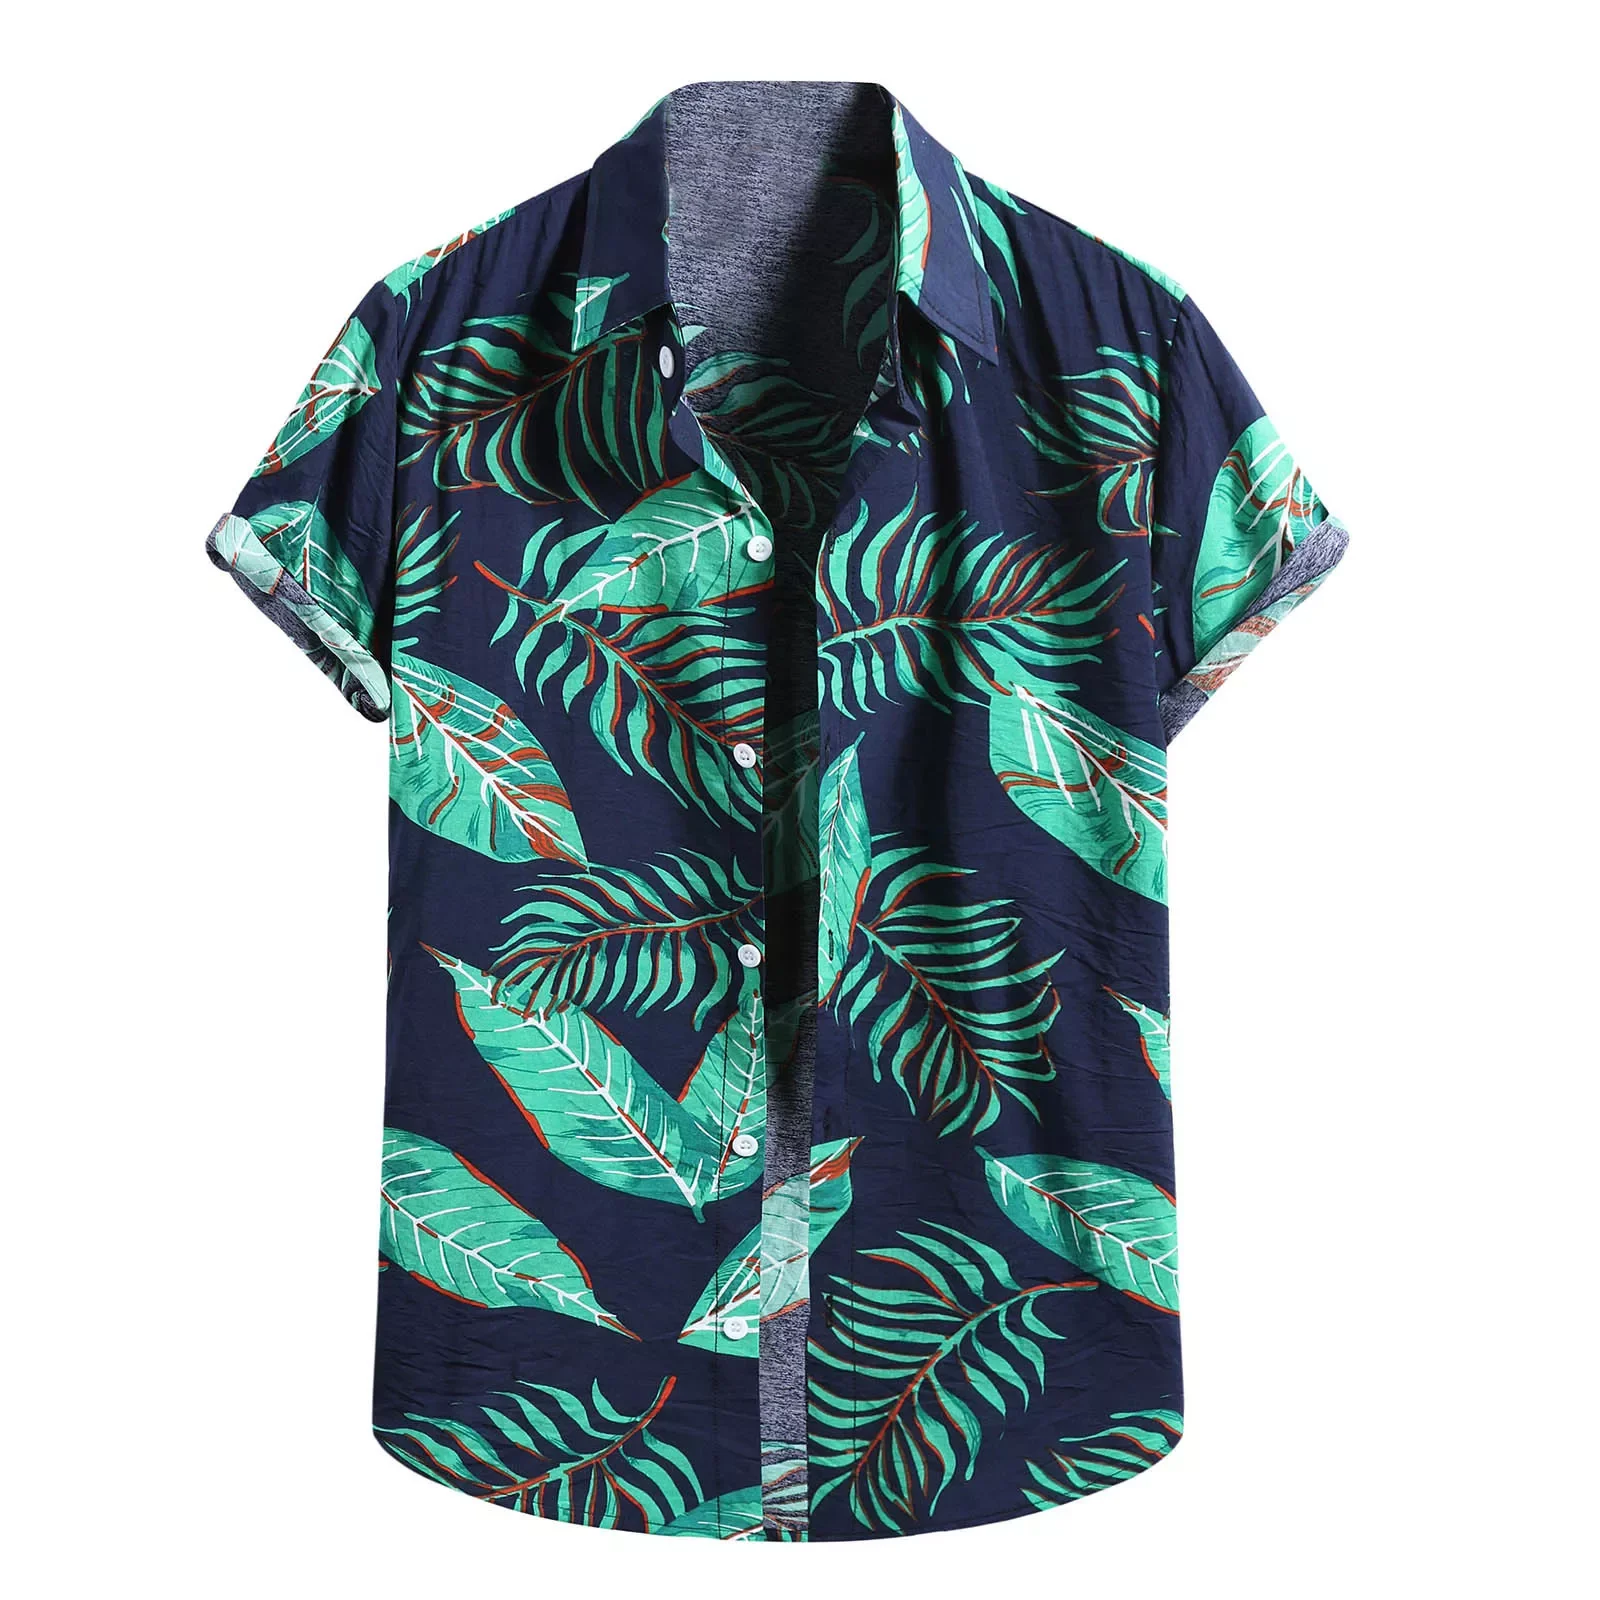 Рубашка мужская с цветочным принтом, модная хлопково-Льняная блузка с короткими рукавами, на пуговицах, пляжный топ, лето 2021